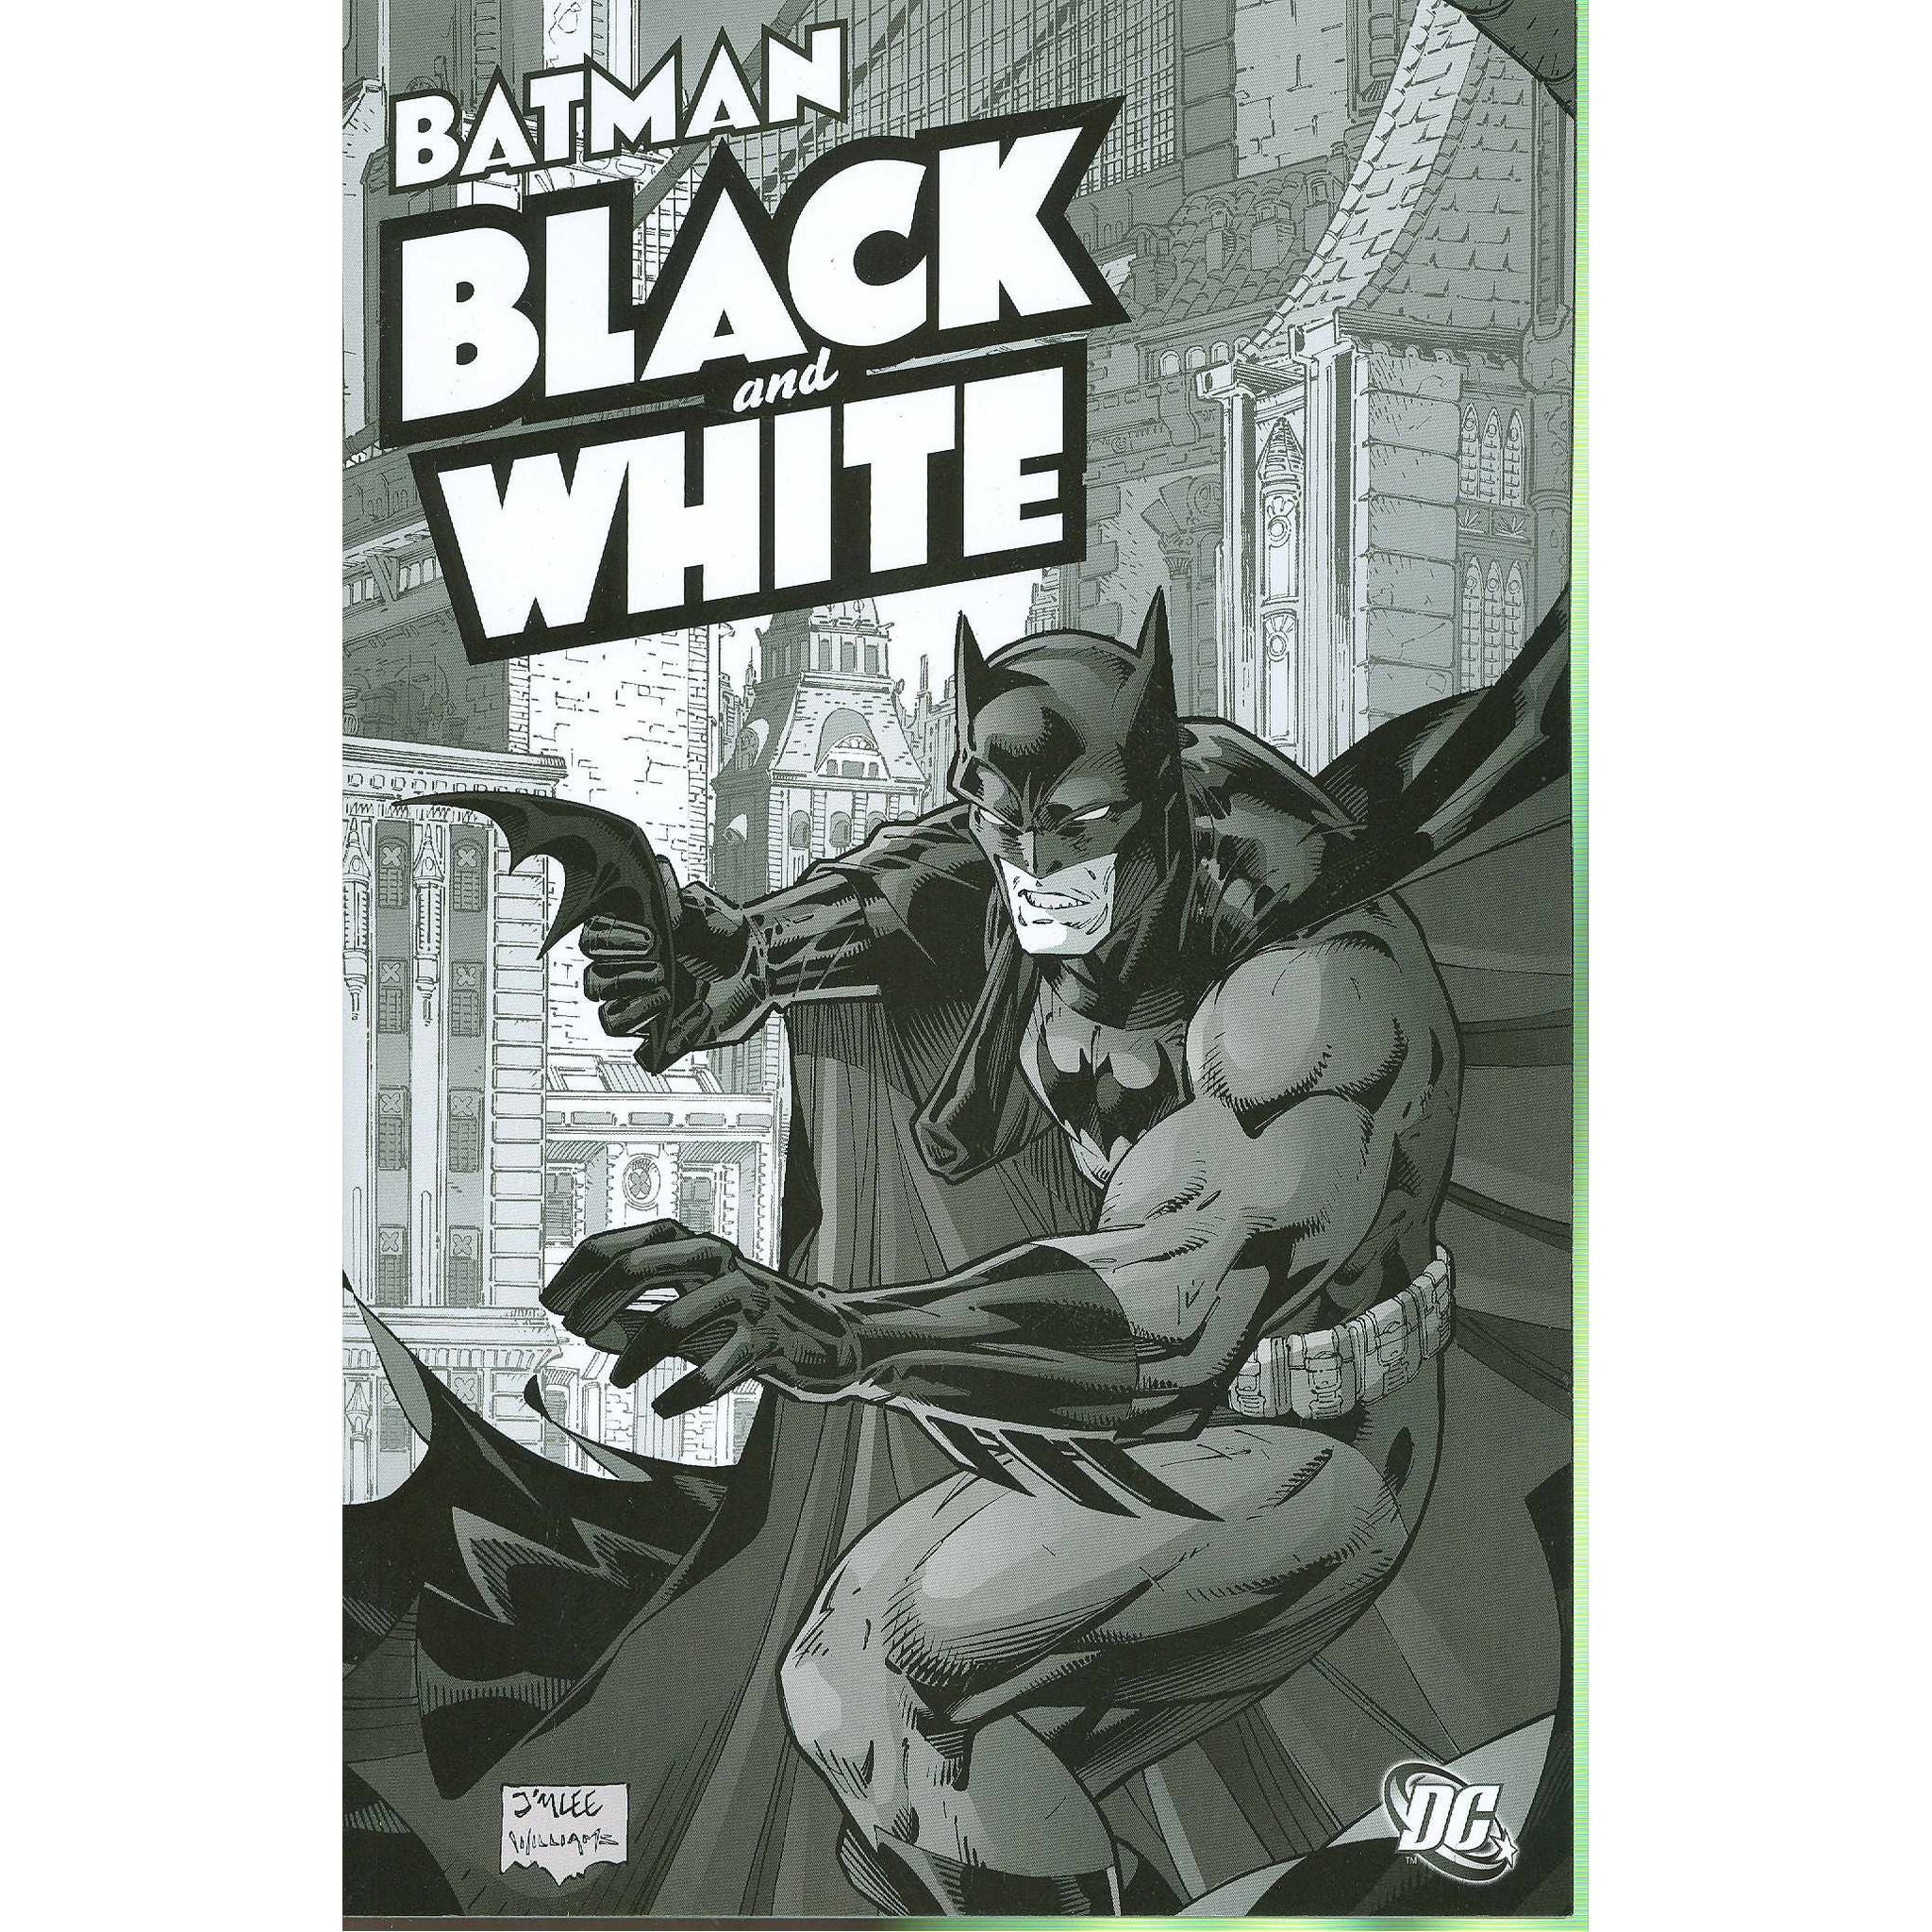  Batman Black And White TP Vol 1 Uncanny!